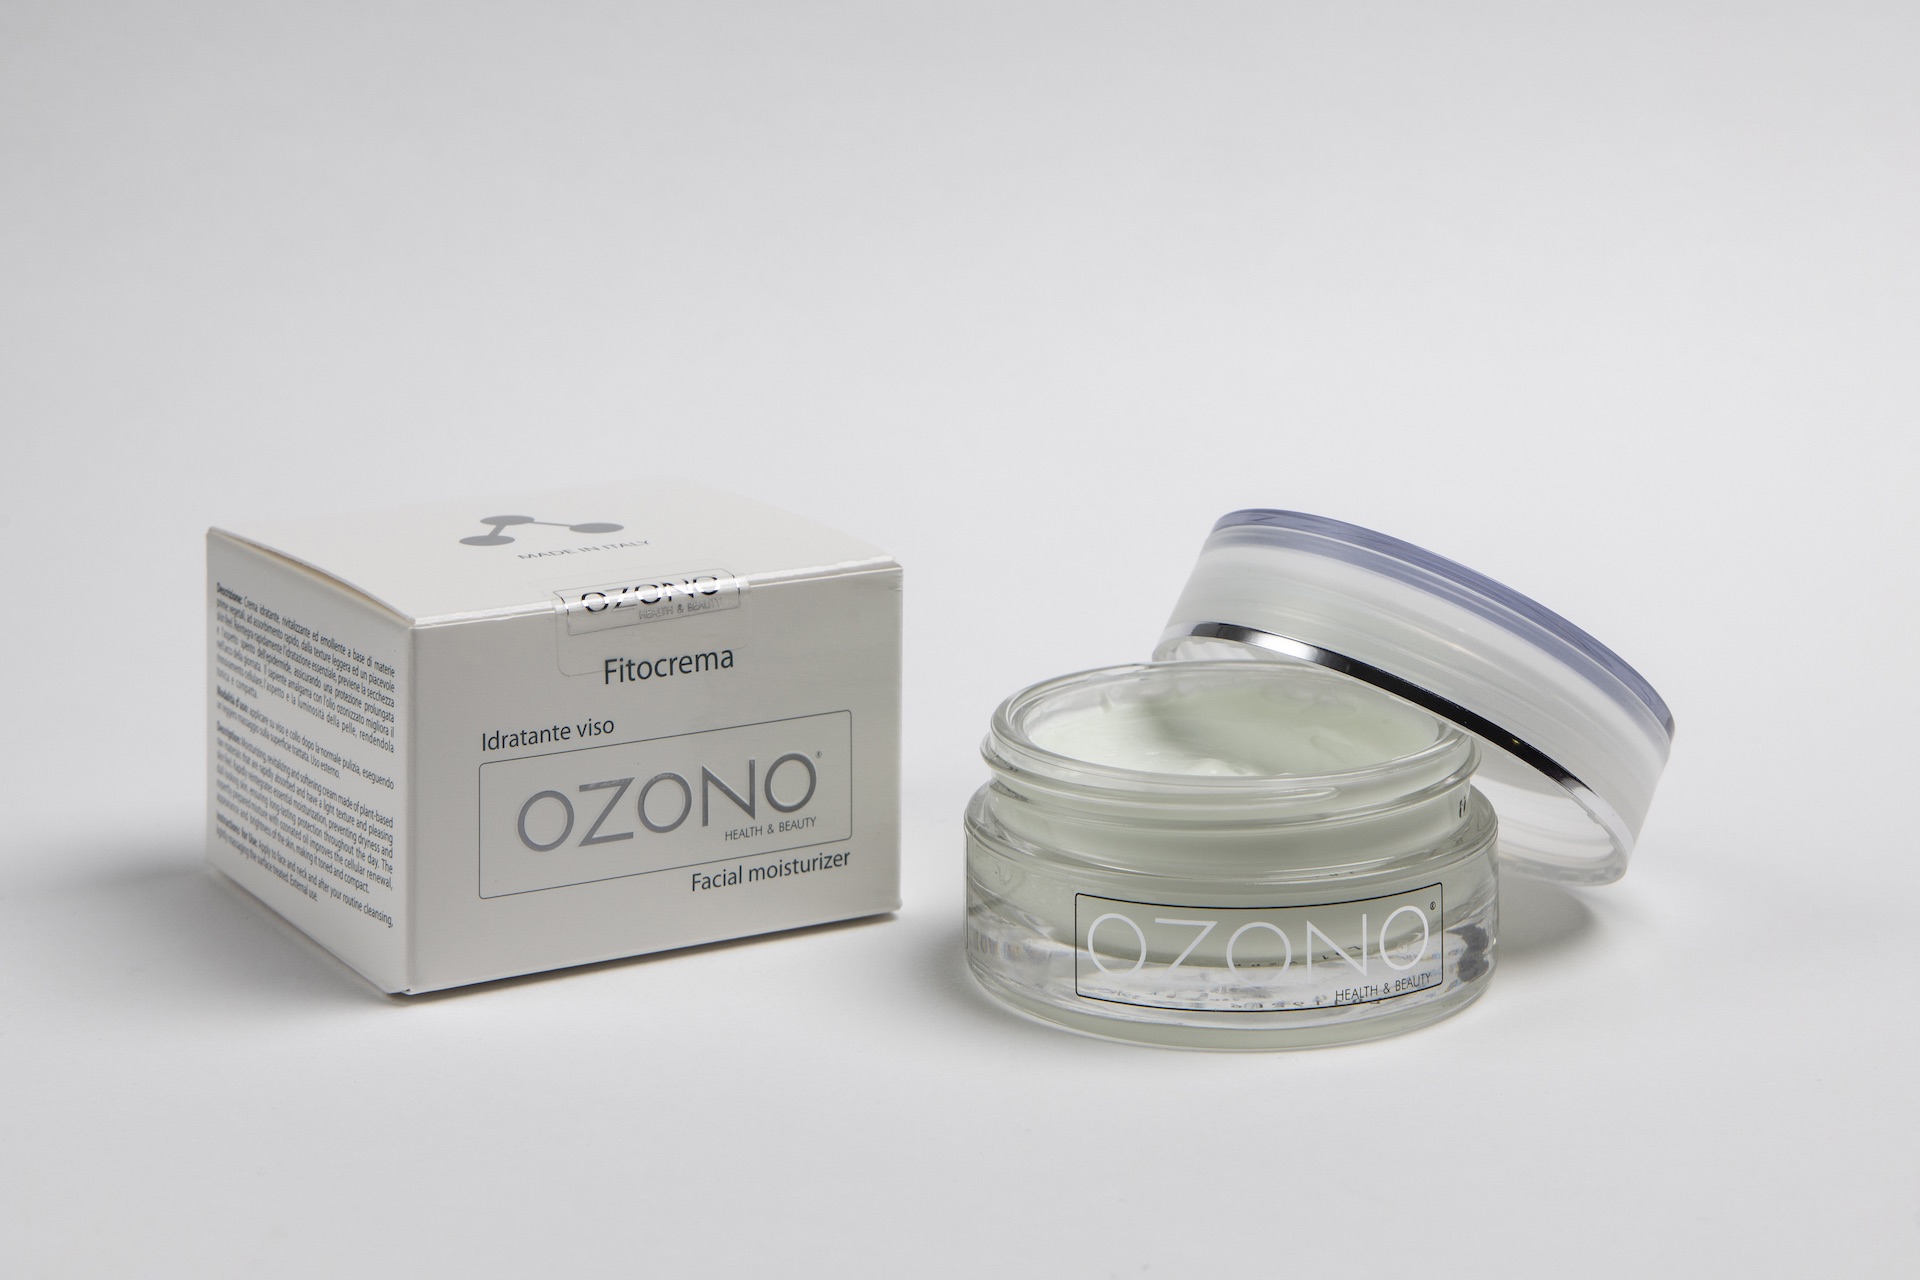 Fitocrema - Ozono Health & Beauty